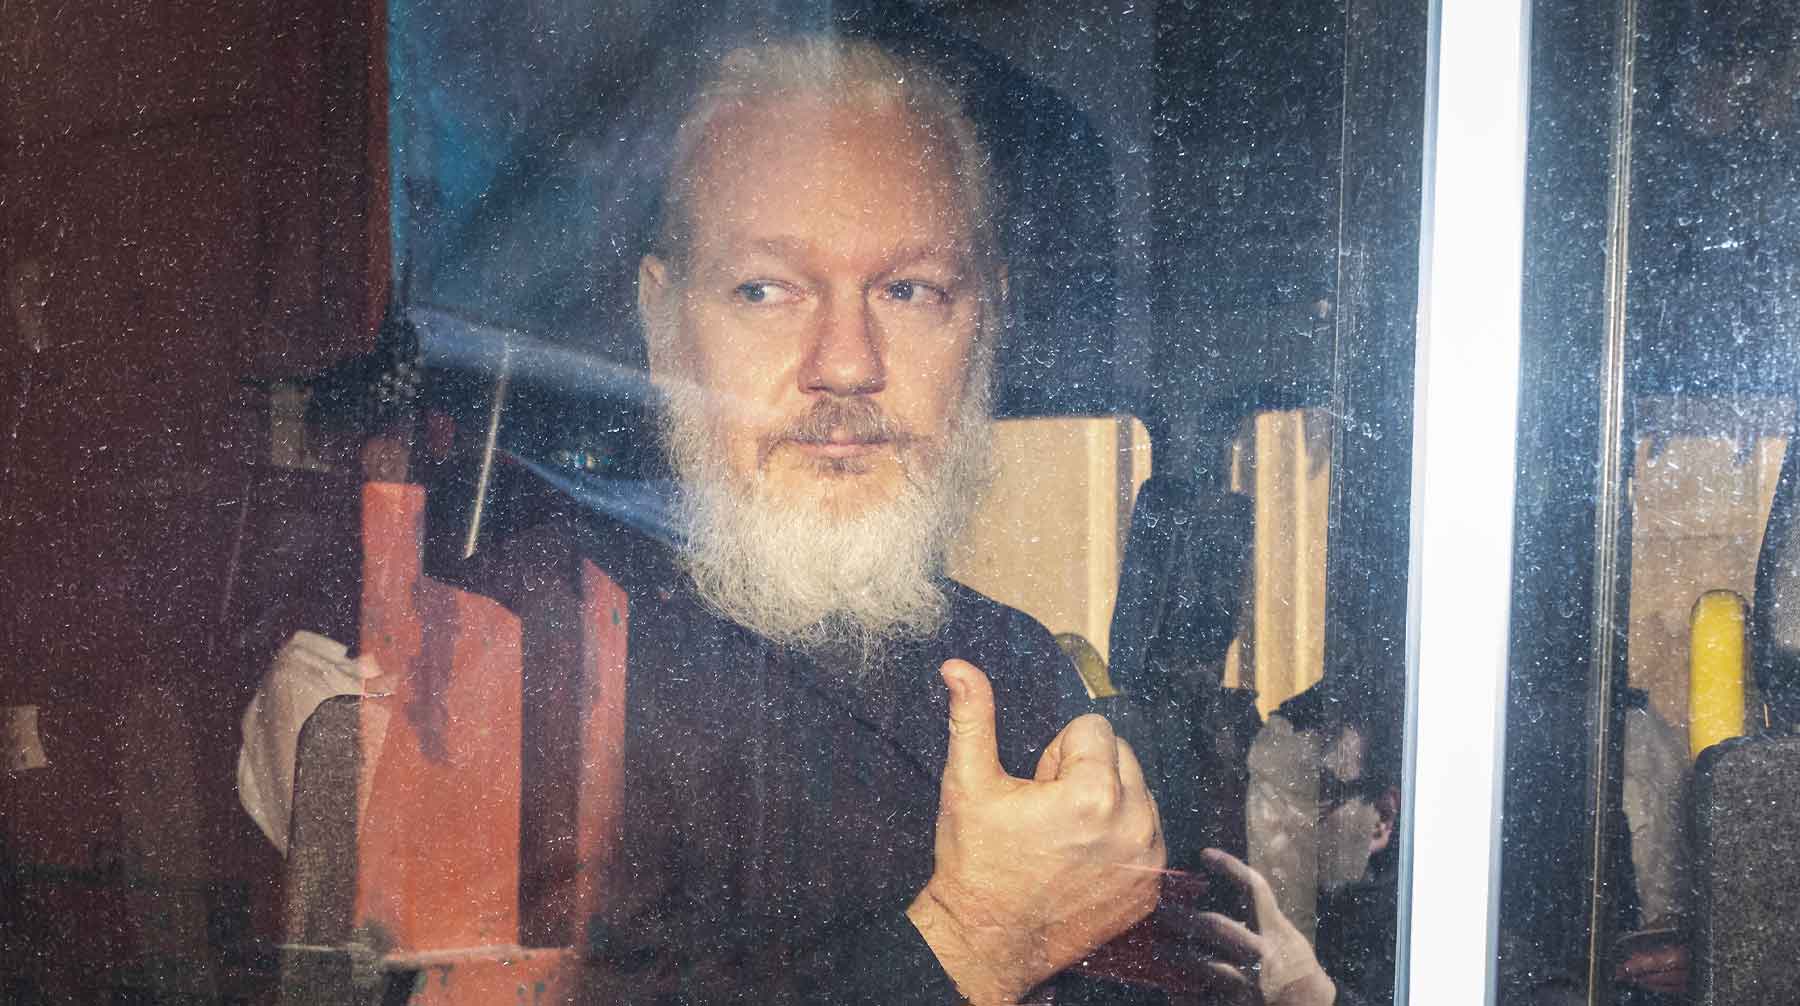 Основатель WikiLeaks заказывал оборудование и проводил в здании встречи с хакерами, сообщает телеканал Фото: © GLOBAL LOOK press / Rob Pinney